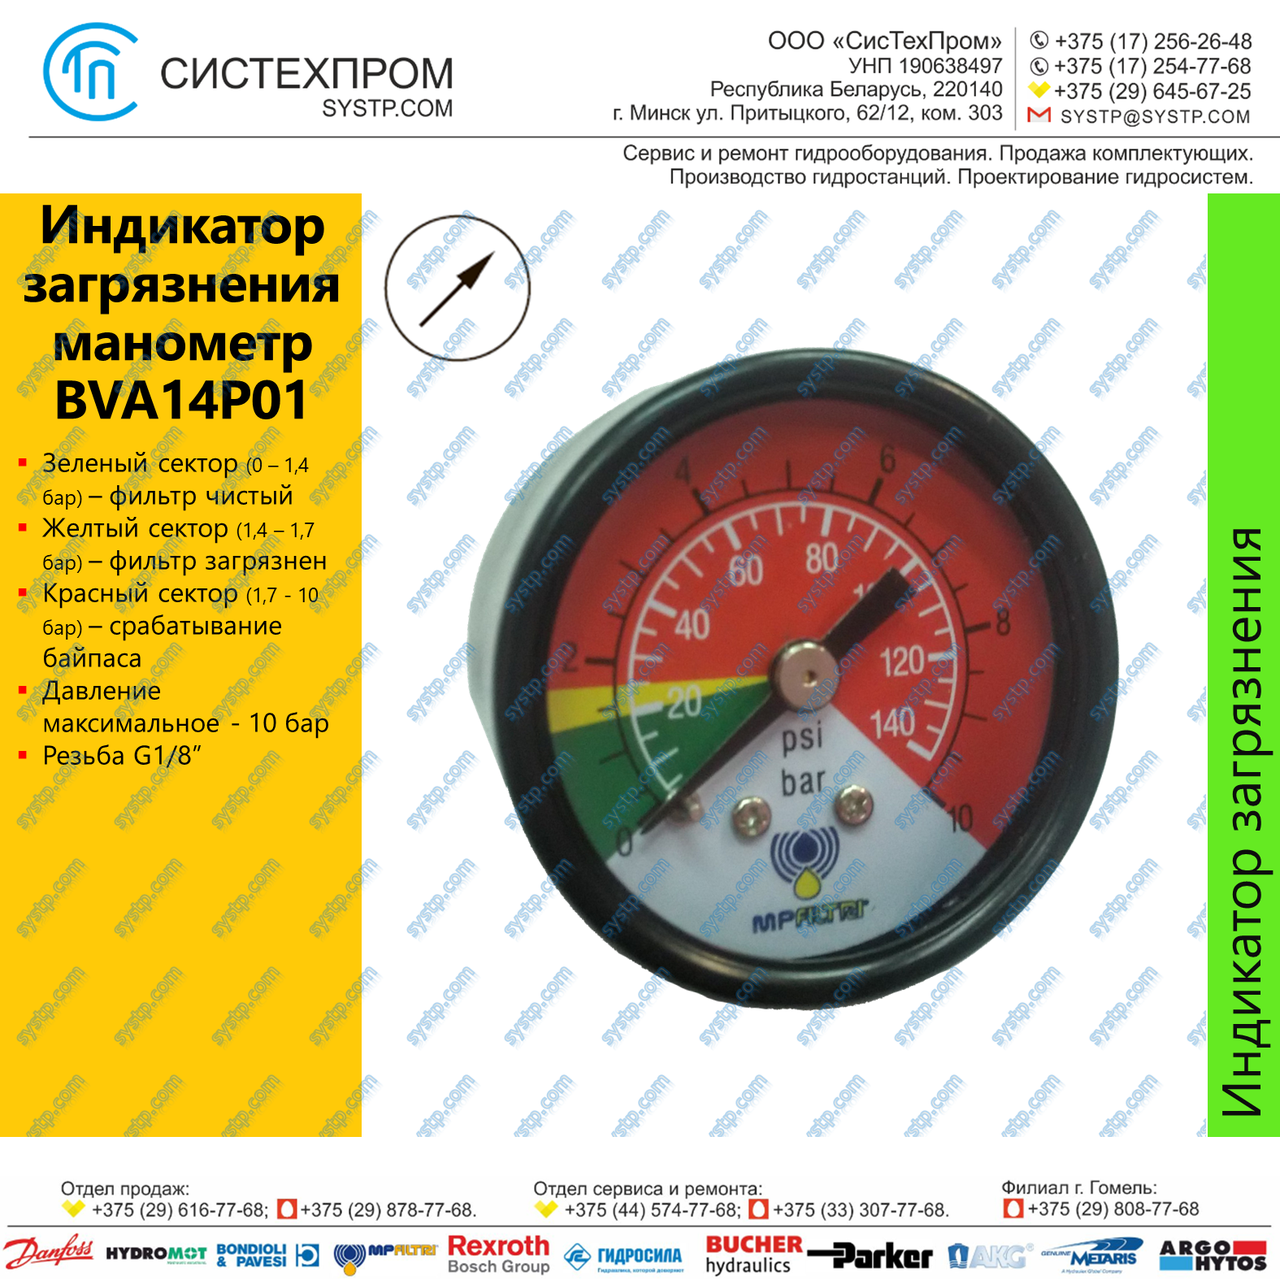 Индикатор загрязнения - манометр BVA14P01